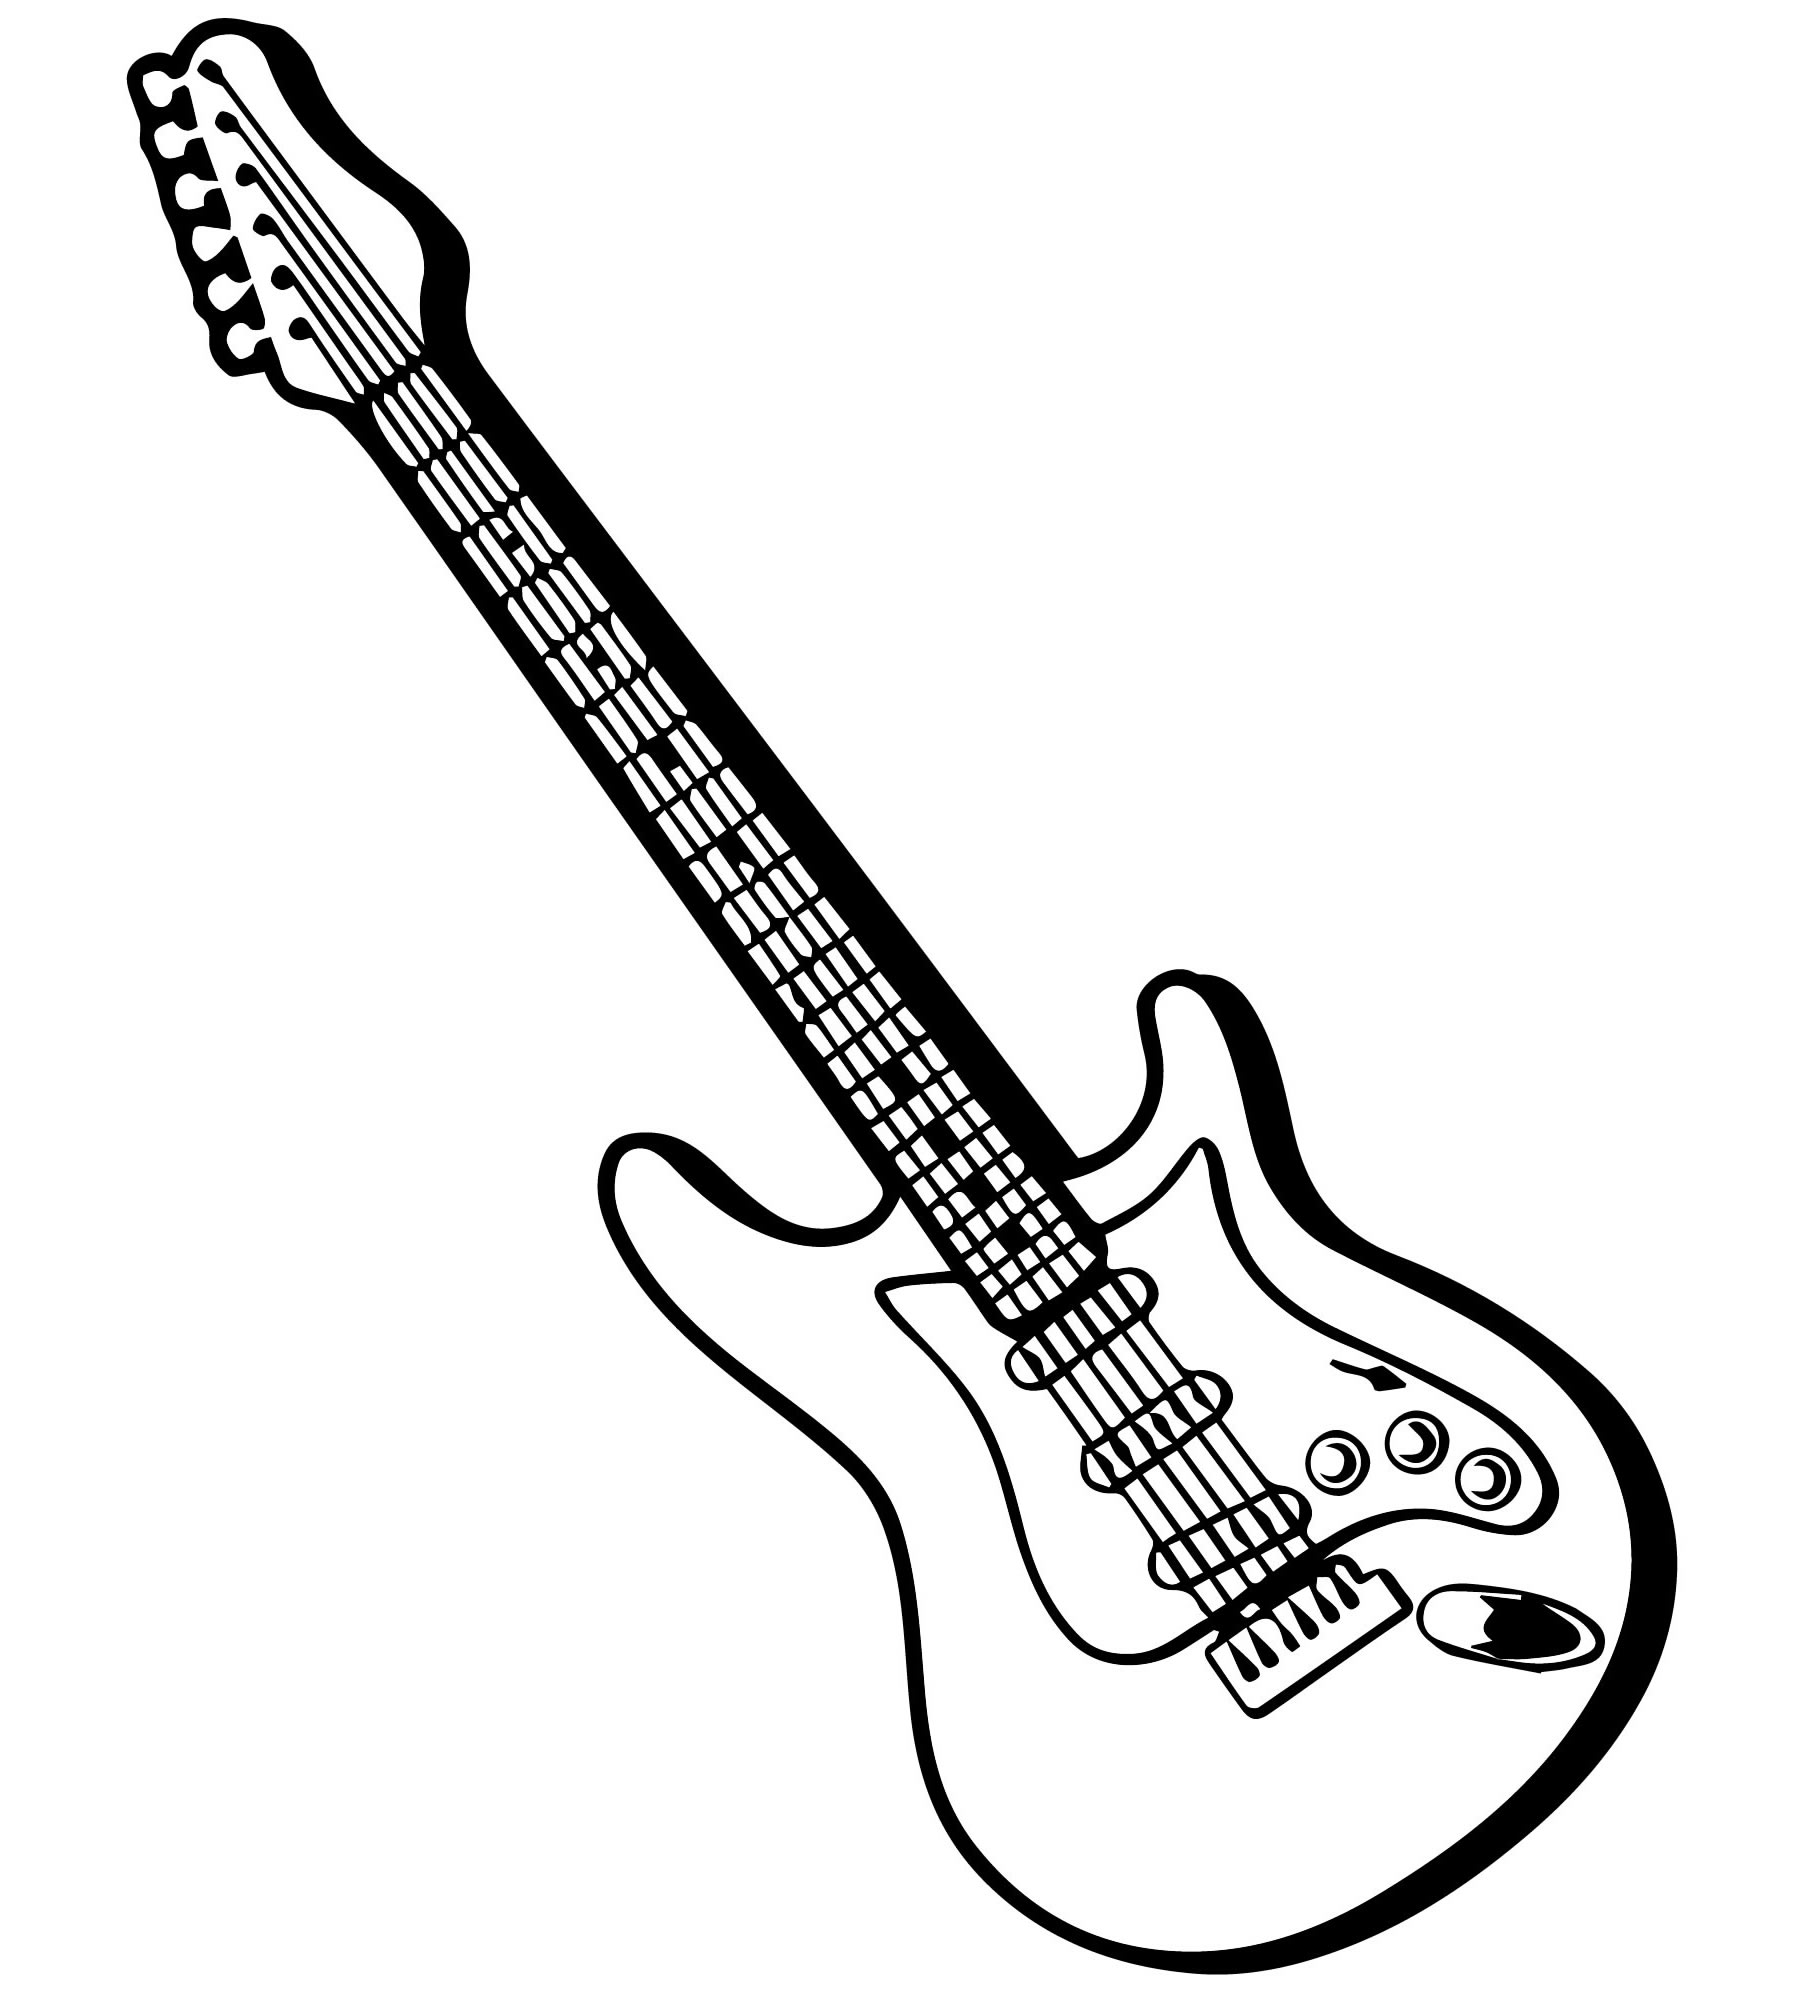 Украсить гитару - форум гитаристов